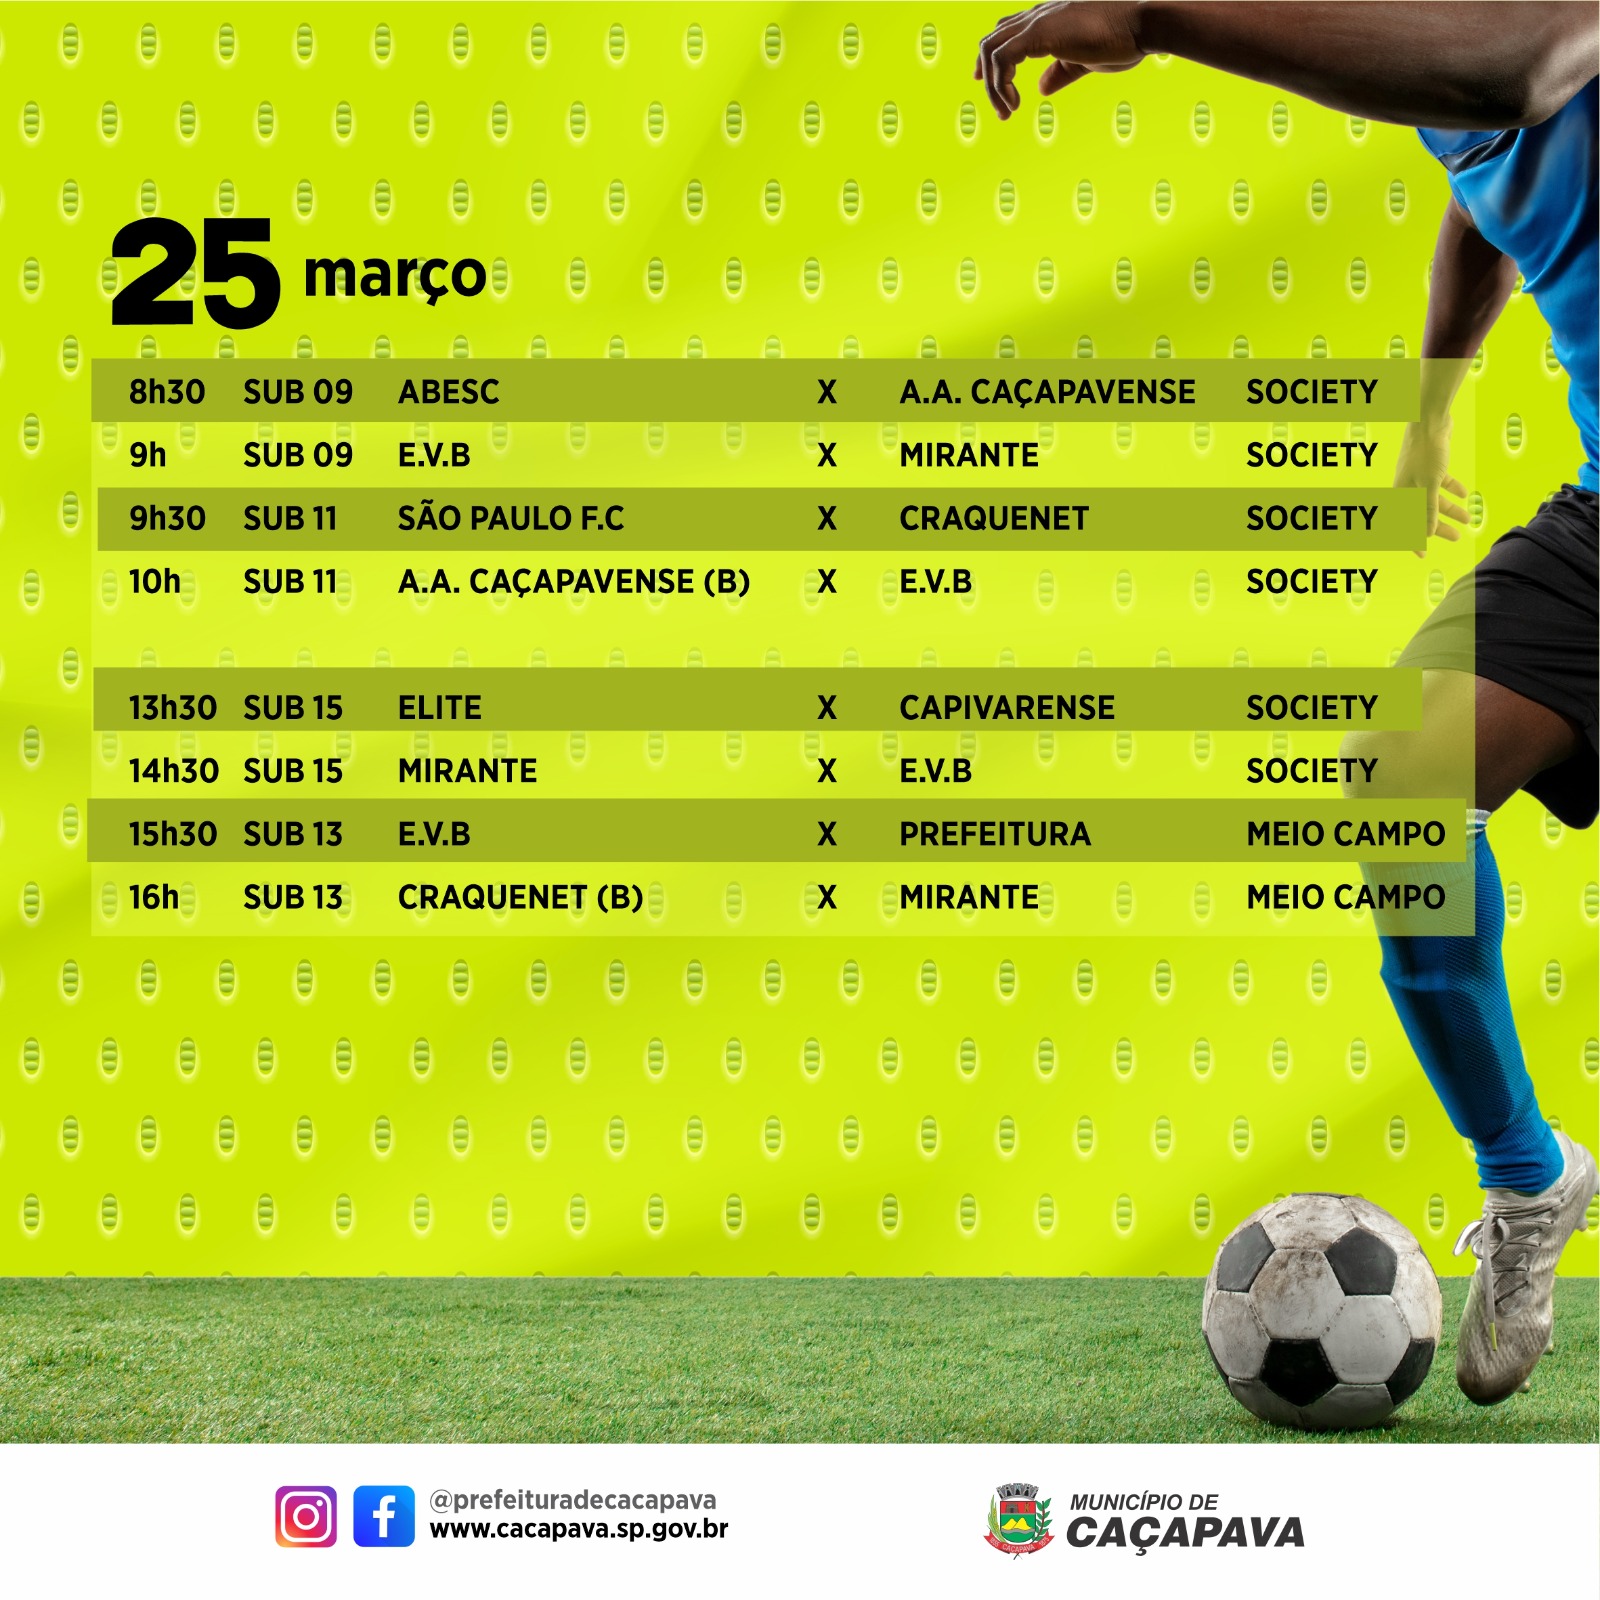 Veja resultados e jogos da 1ª Copa Simpatia de Futebol de Base - Prefeitura  de Caçapava